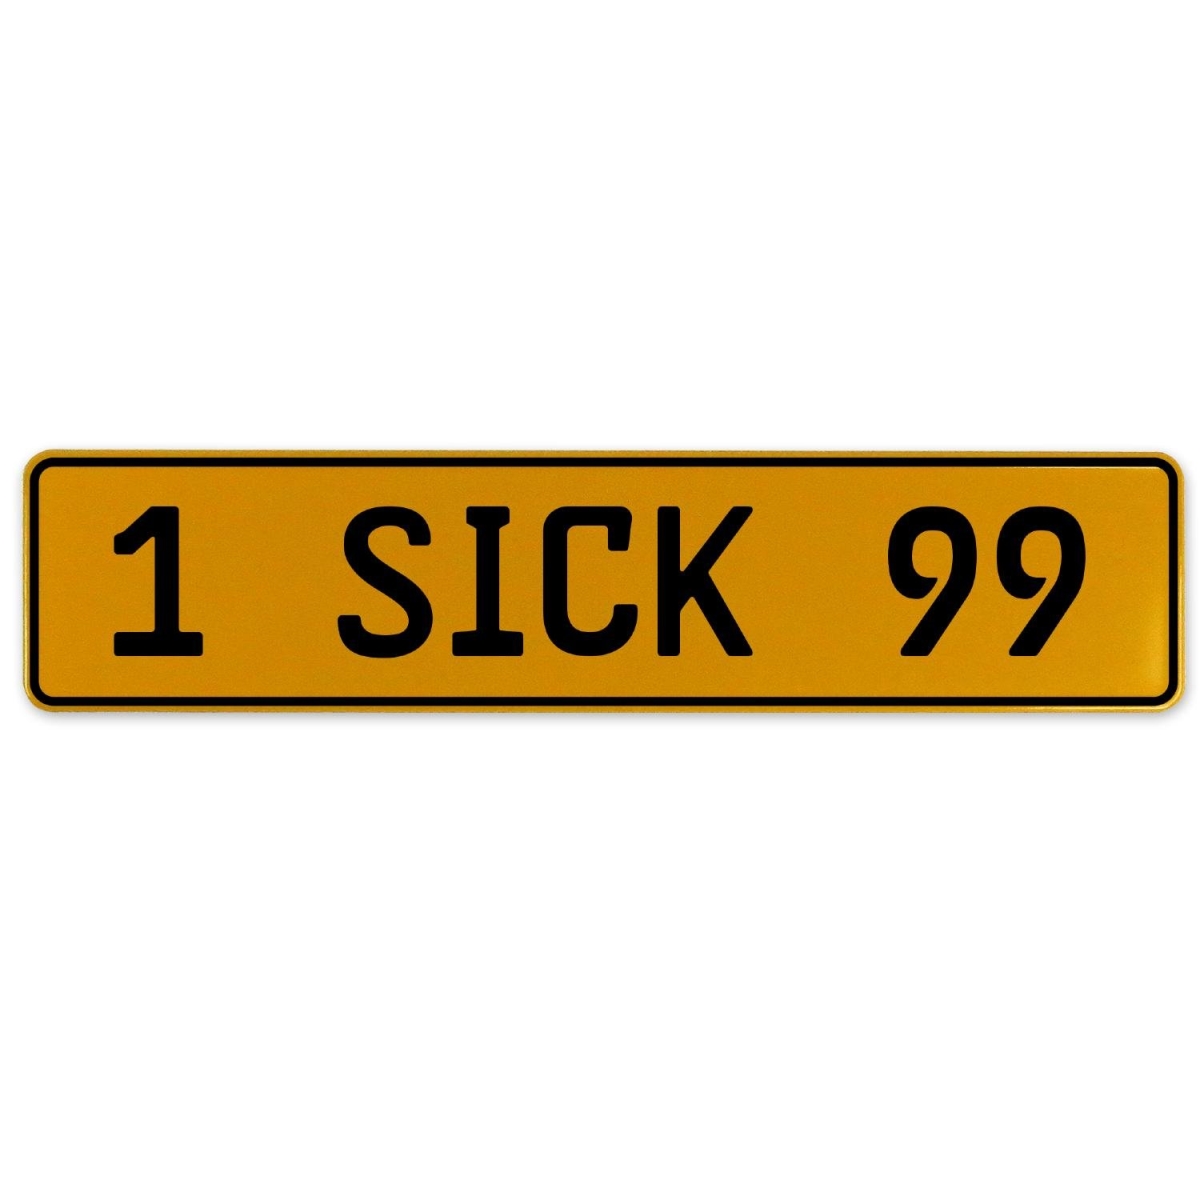 1 Sick 99 - Yellow Aluminum Street Sign Mancave Euro Plate Name Door Sign Wall